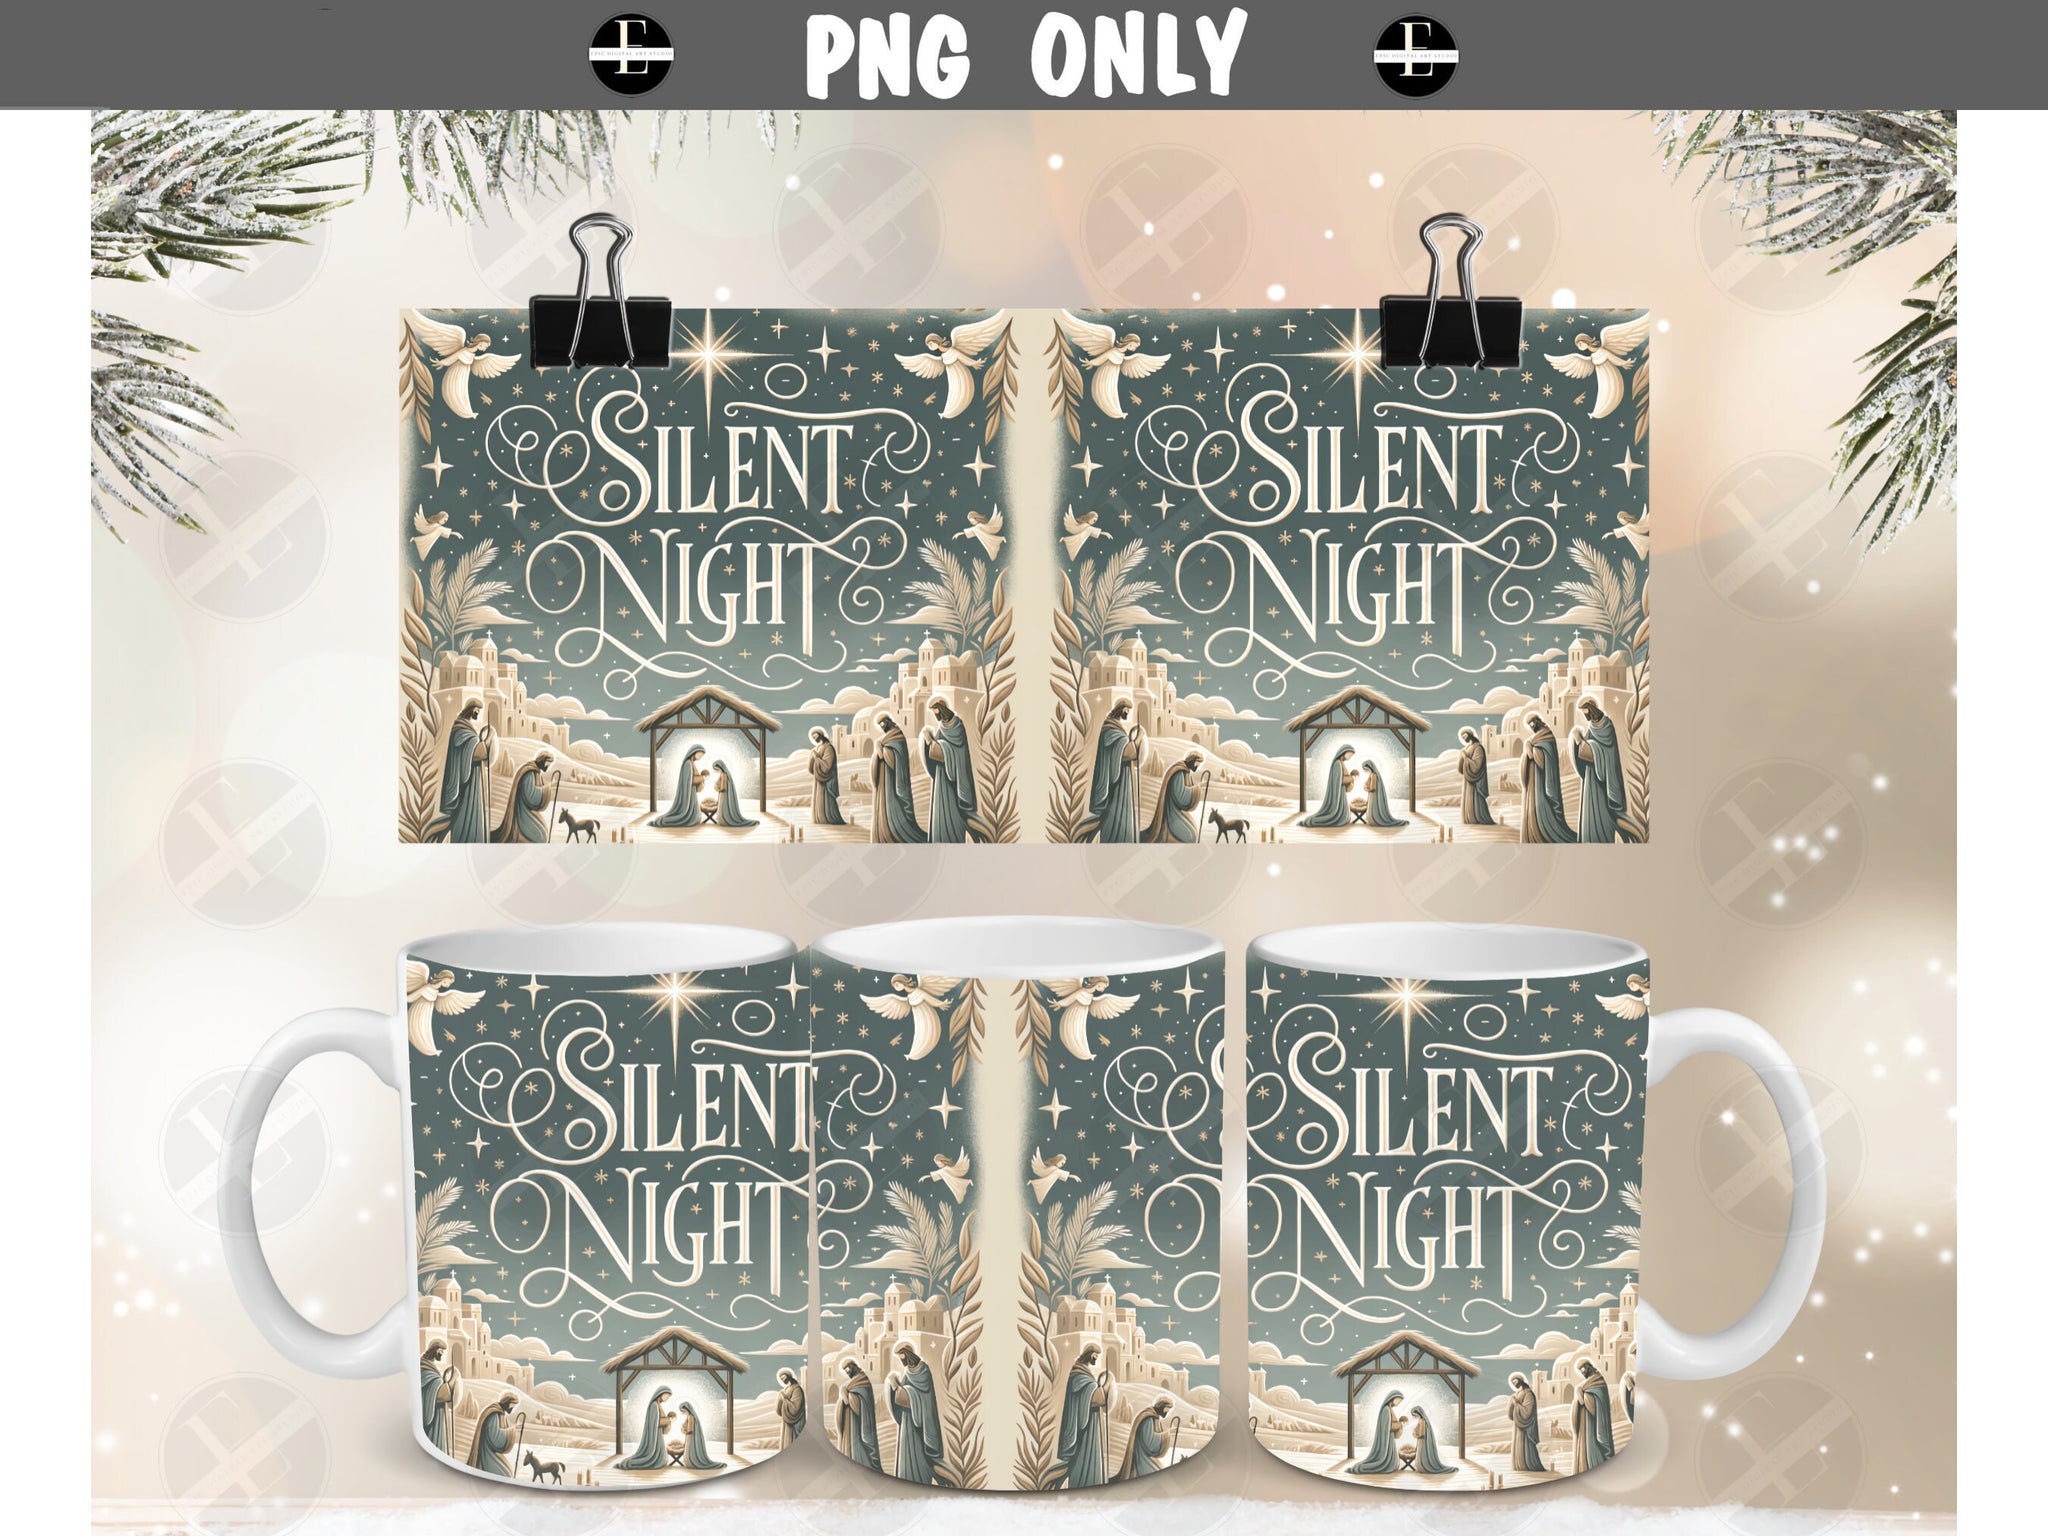 Christmas Mug Wraps - Nativity Silent Night 11 oz Mug Design - Ceramic Sublimation Wrap-Around Design - Instant Download - Commercial Use